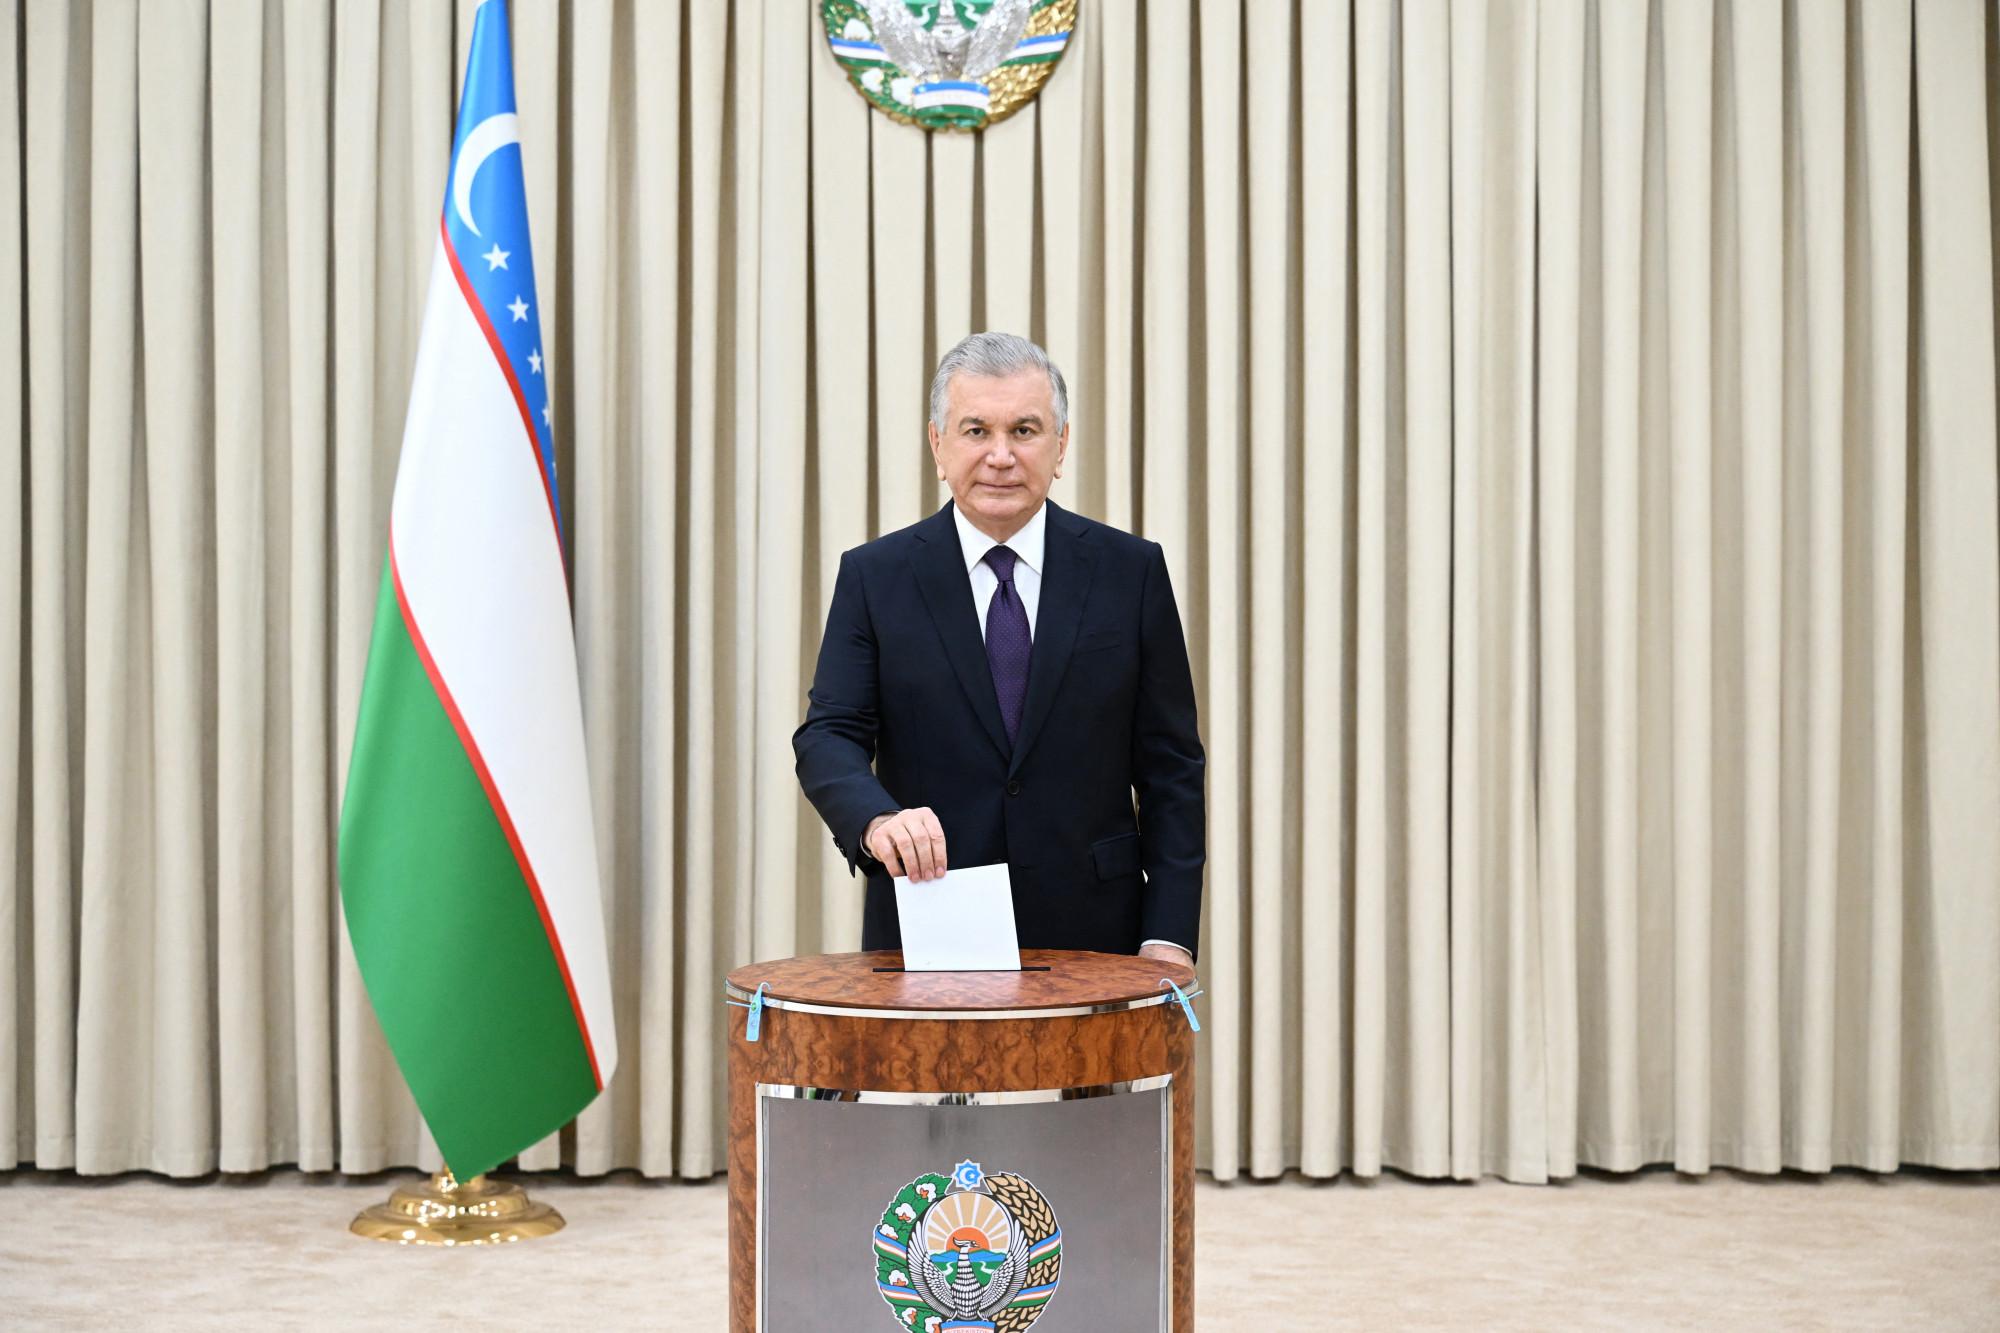 Üzbegisztánban elfogadták az alkotmánymódosítást, 2040-ig maradhat az államfő